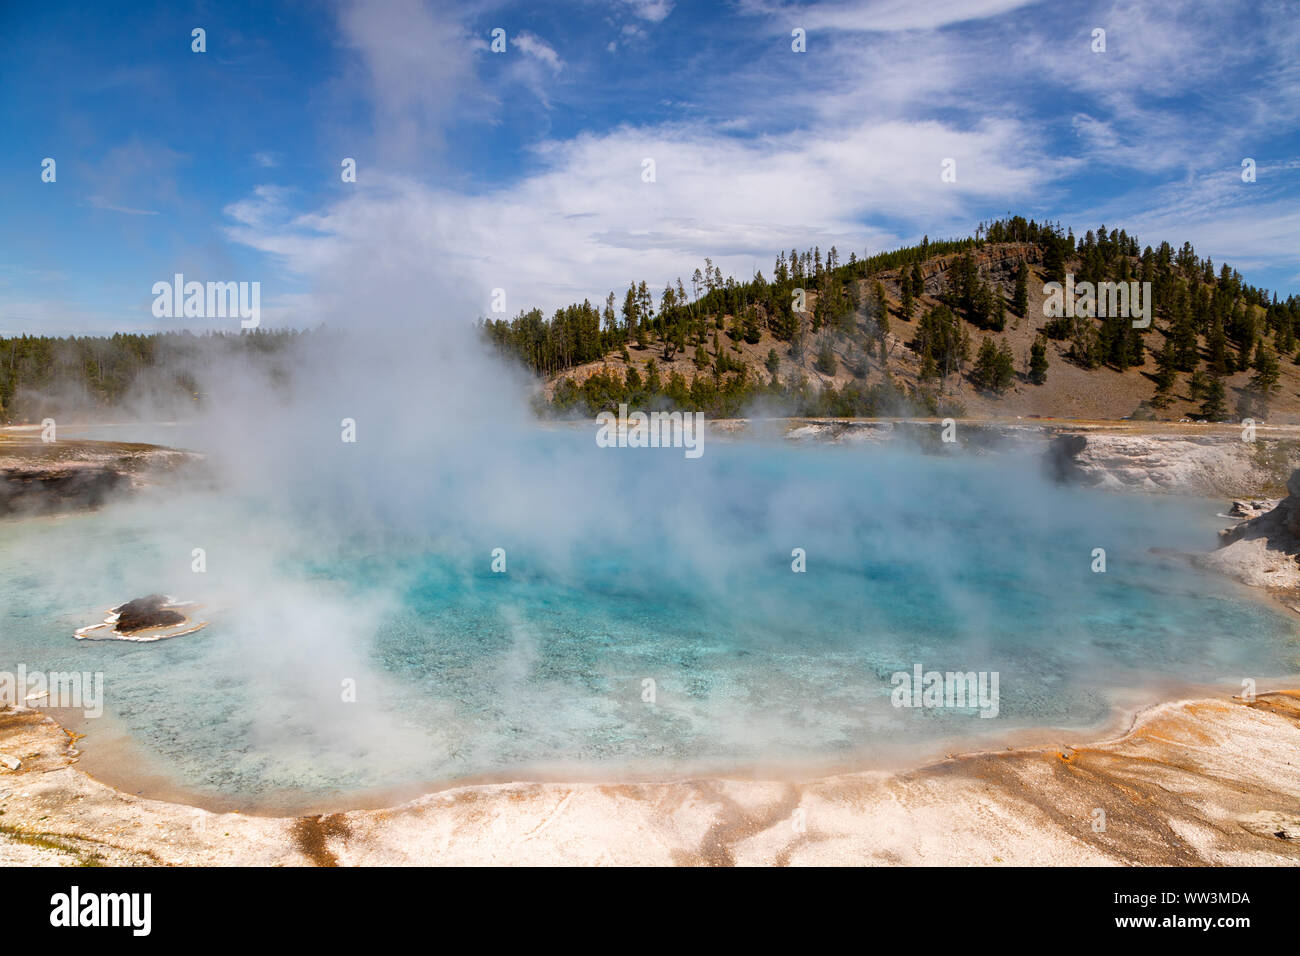 Dampf steigt aus dem Pool des Grand Prismatic Spring im Yellowstone National Park. Es ist die größte heiße Quelle des Yellowstone National Park mit 200-330 Stockfoto